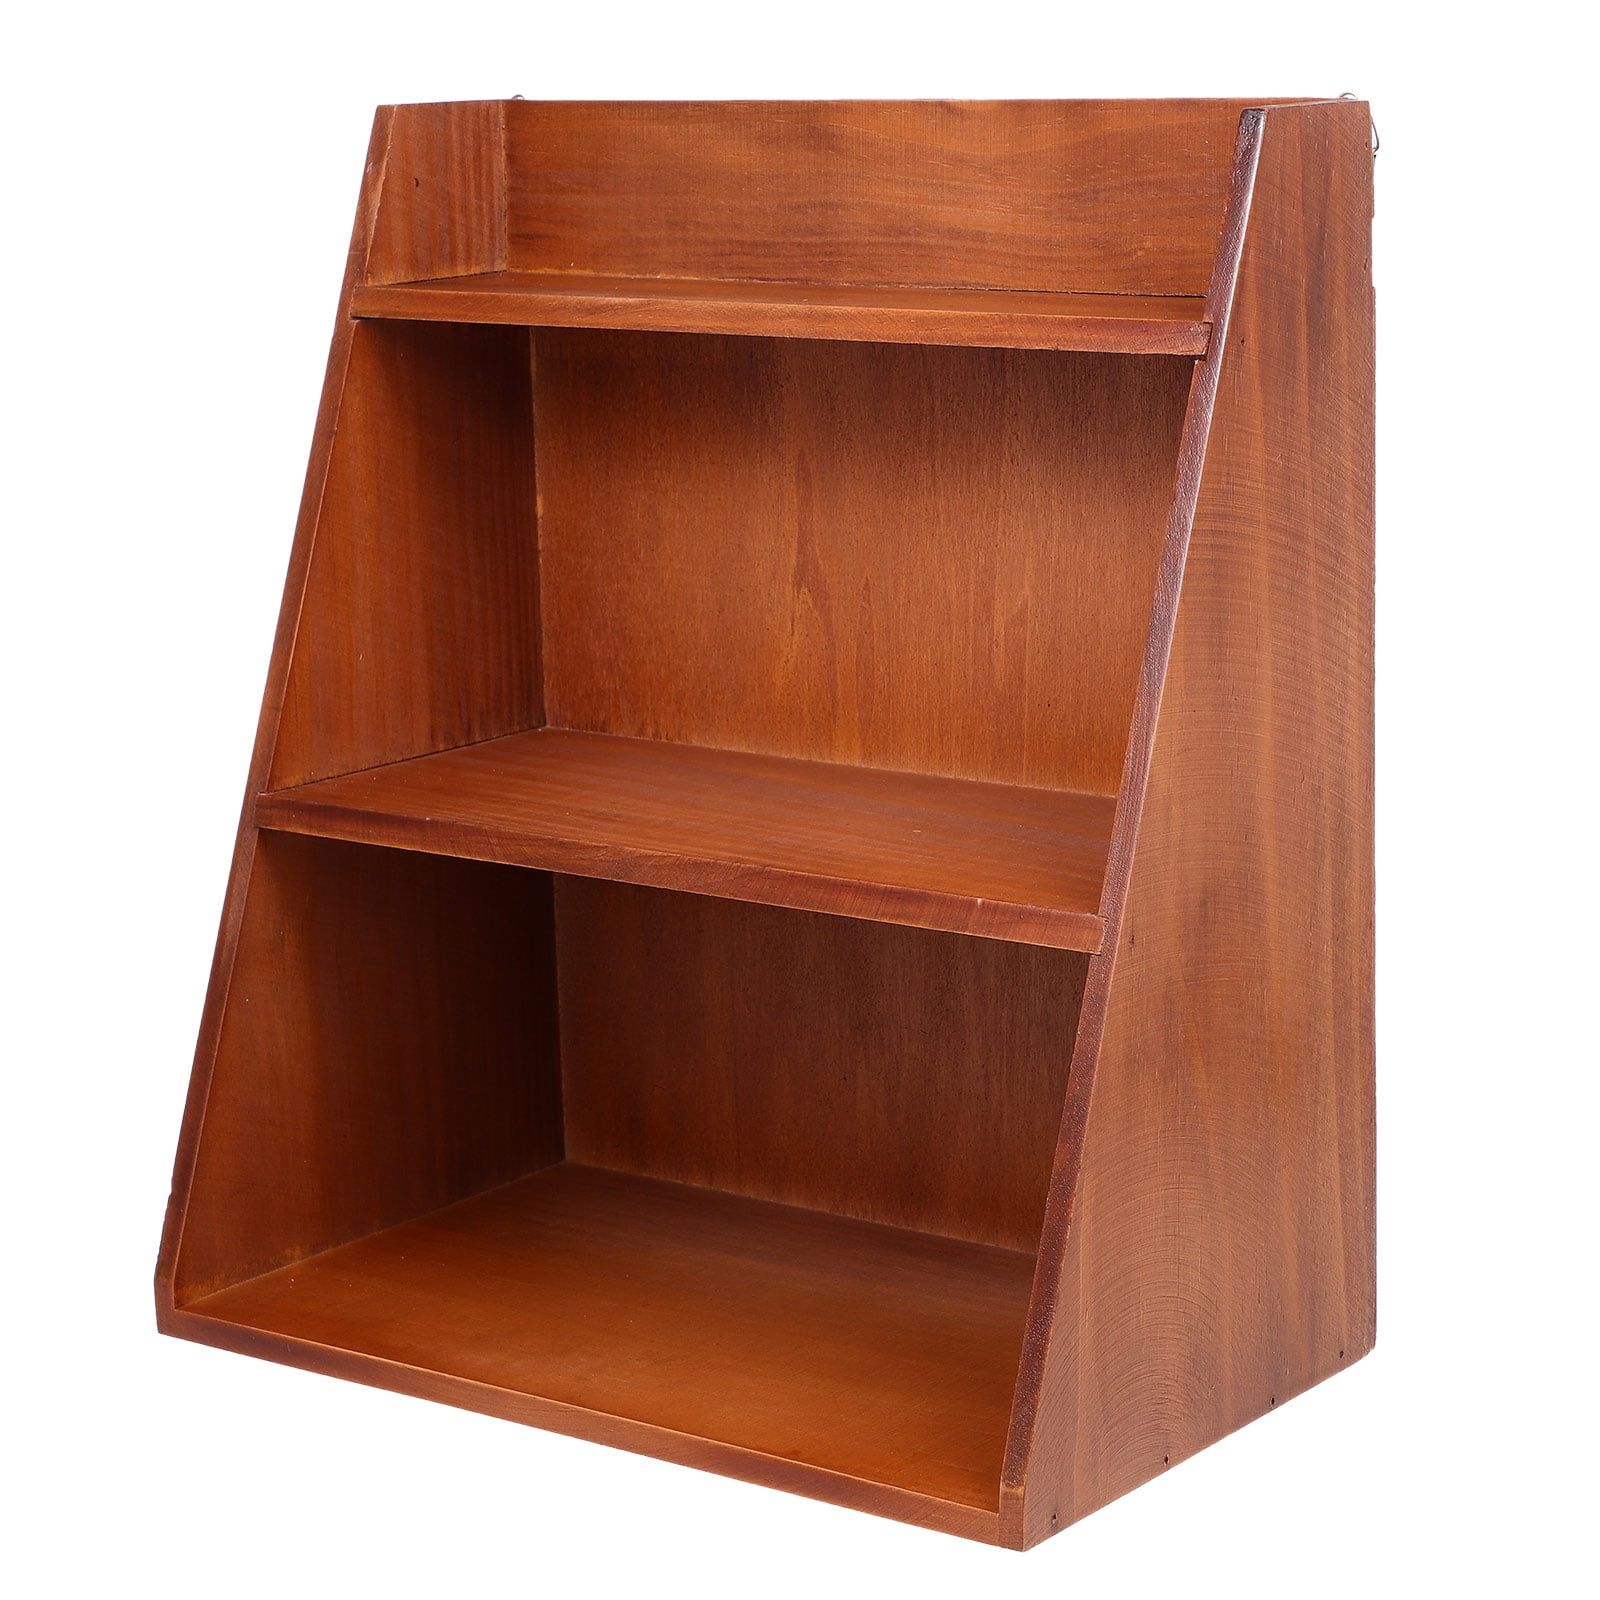 HOLGER Solid Wood 3 Tier Floor Storage Shelf Rack Multi-Use